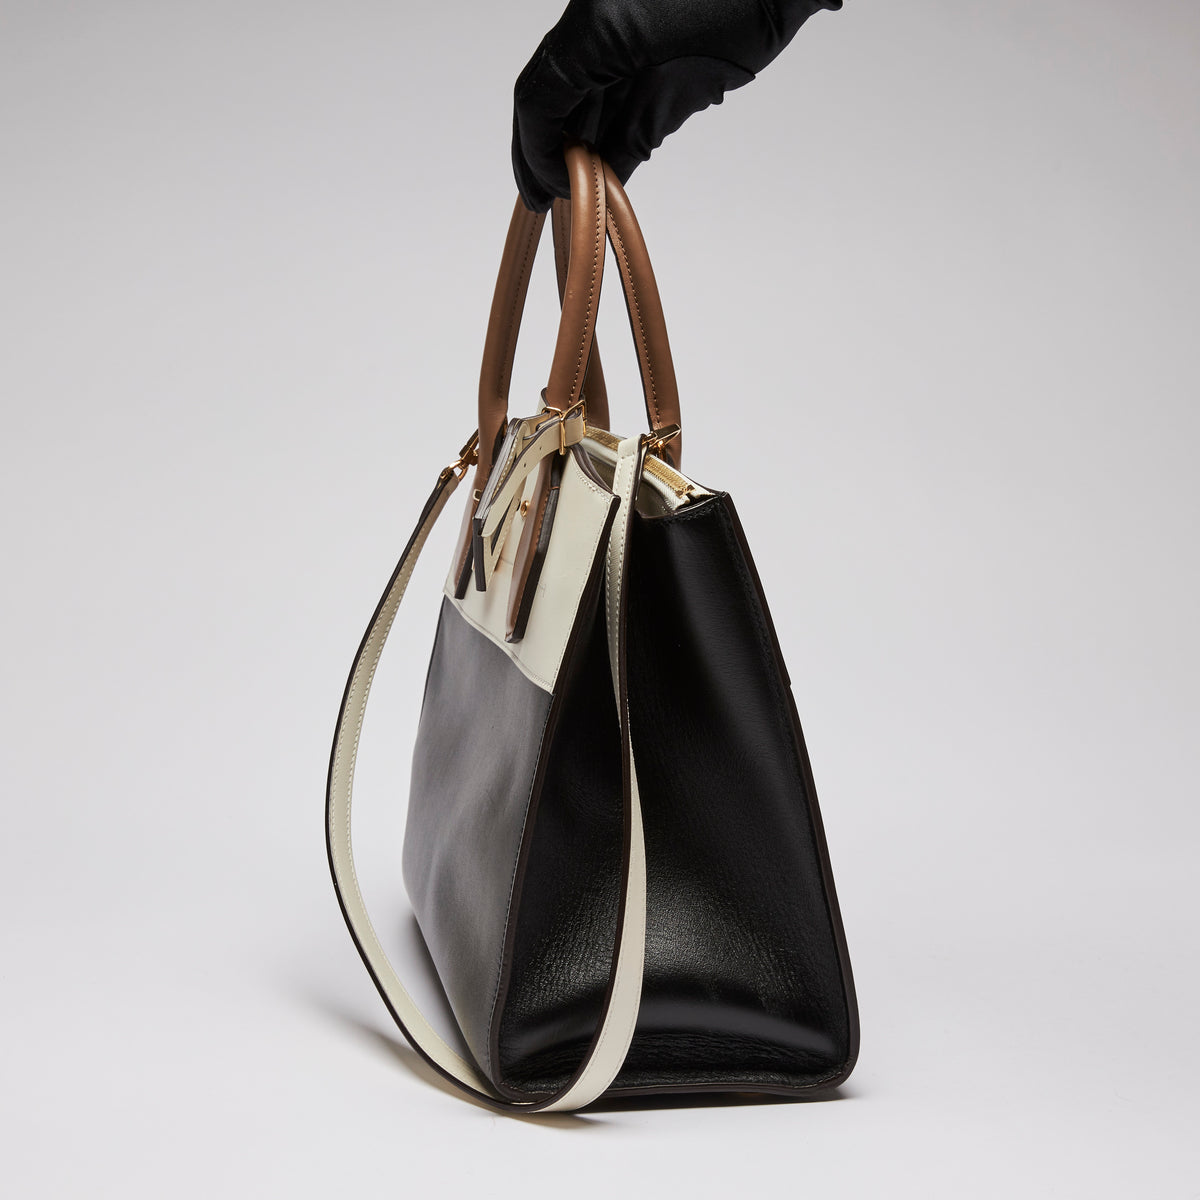 Excellent Pre-Loved Ivory/Dark Beige/Black Smooth Leather Top Handle Bag. (side)